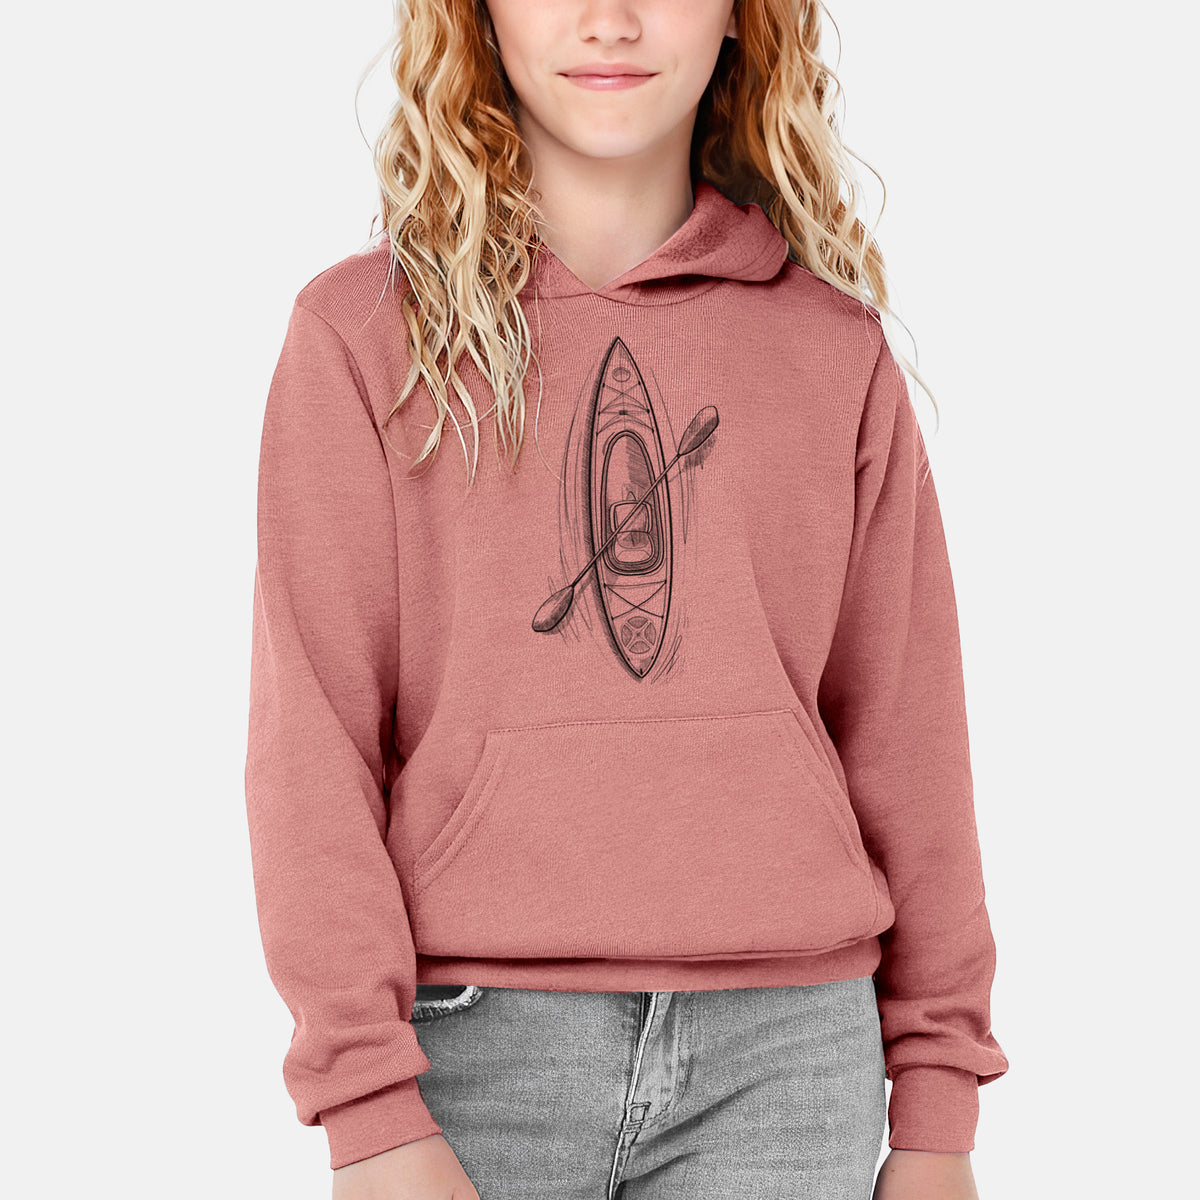 Kayak - Youth Hoodie Sweatshirt